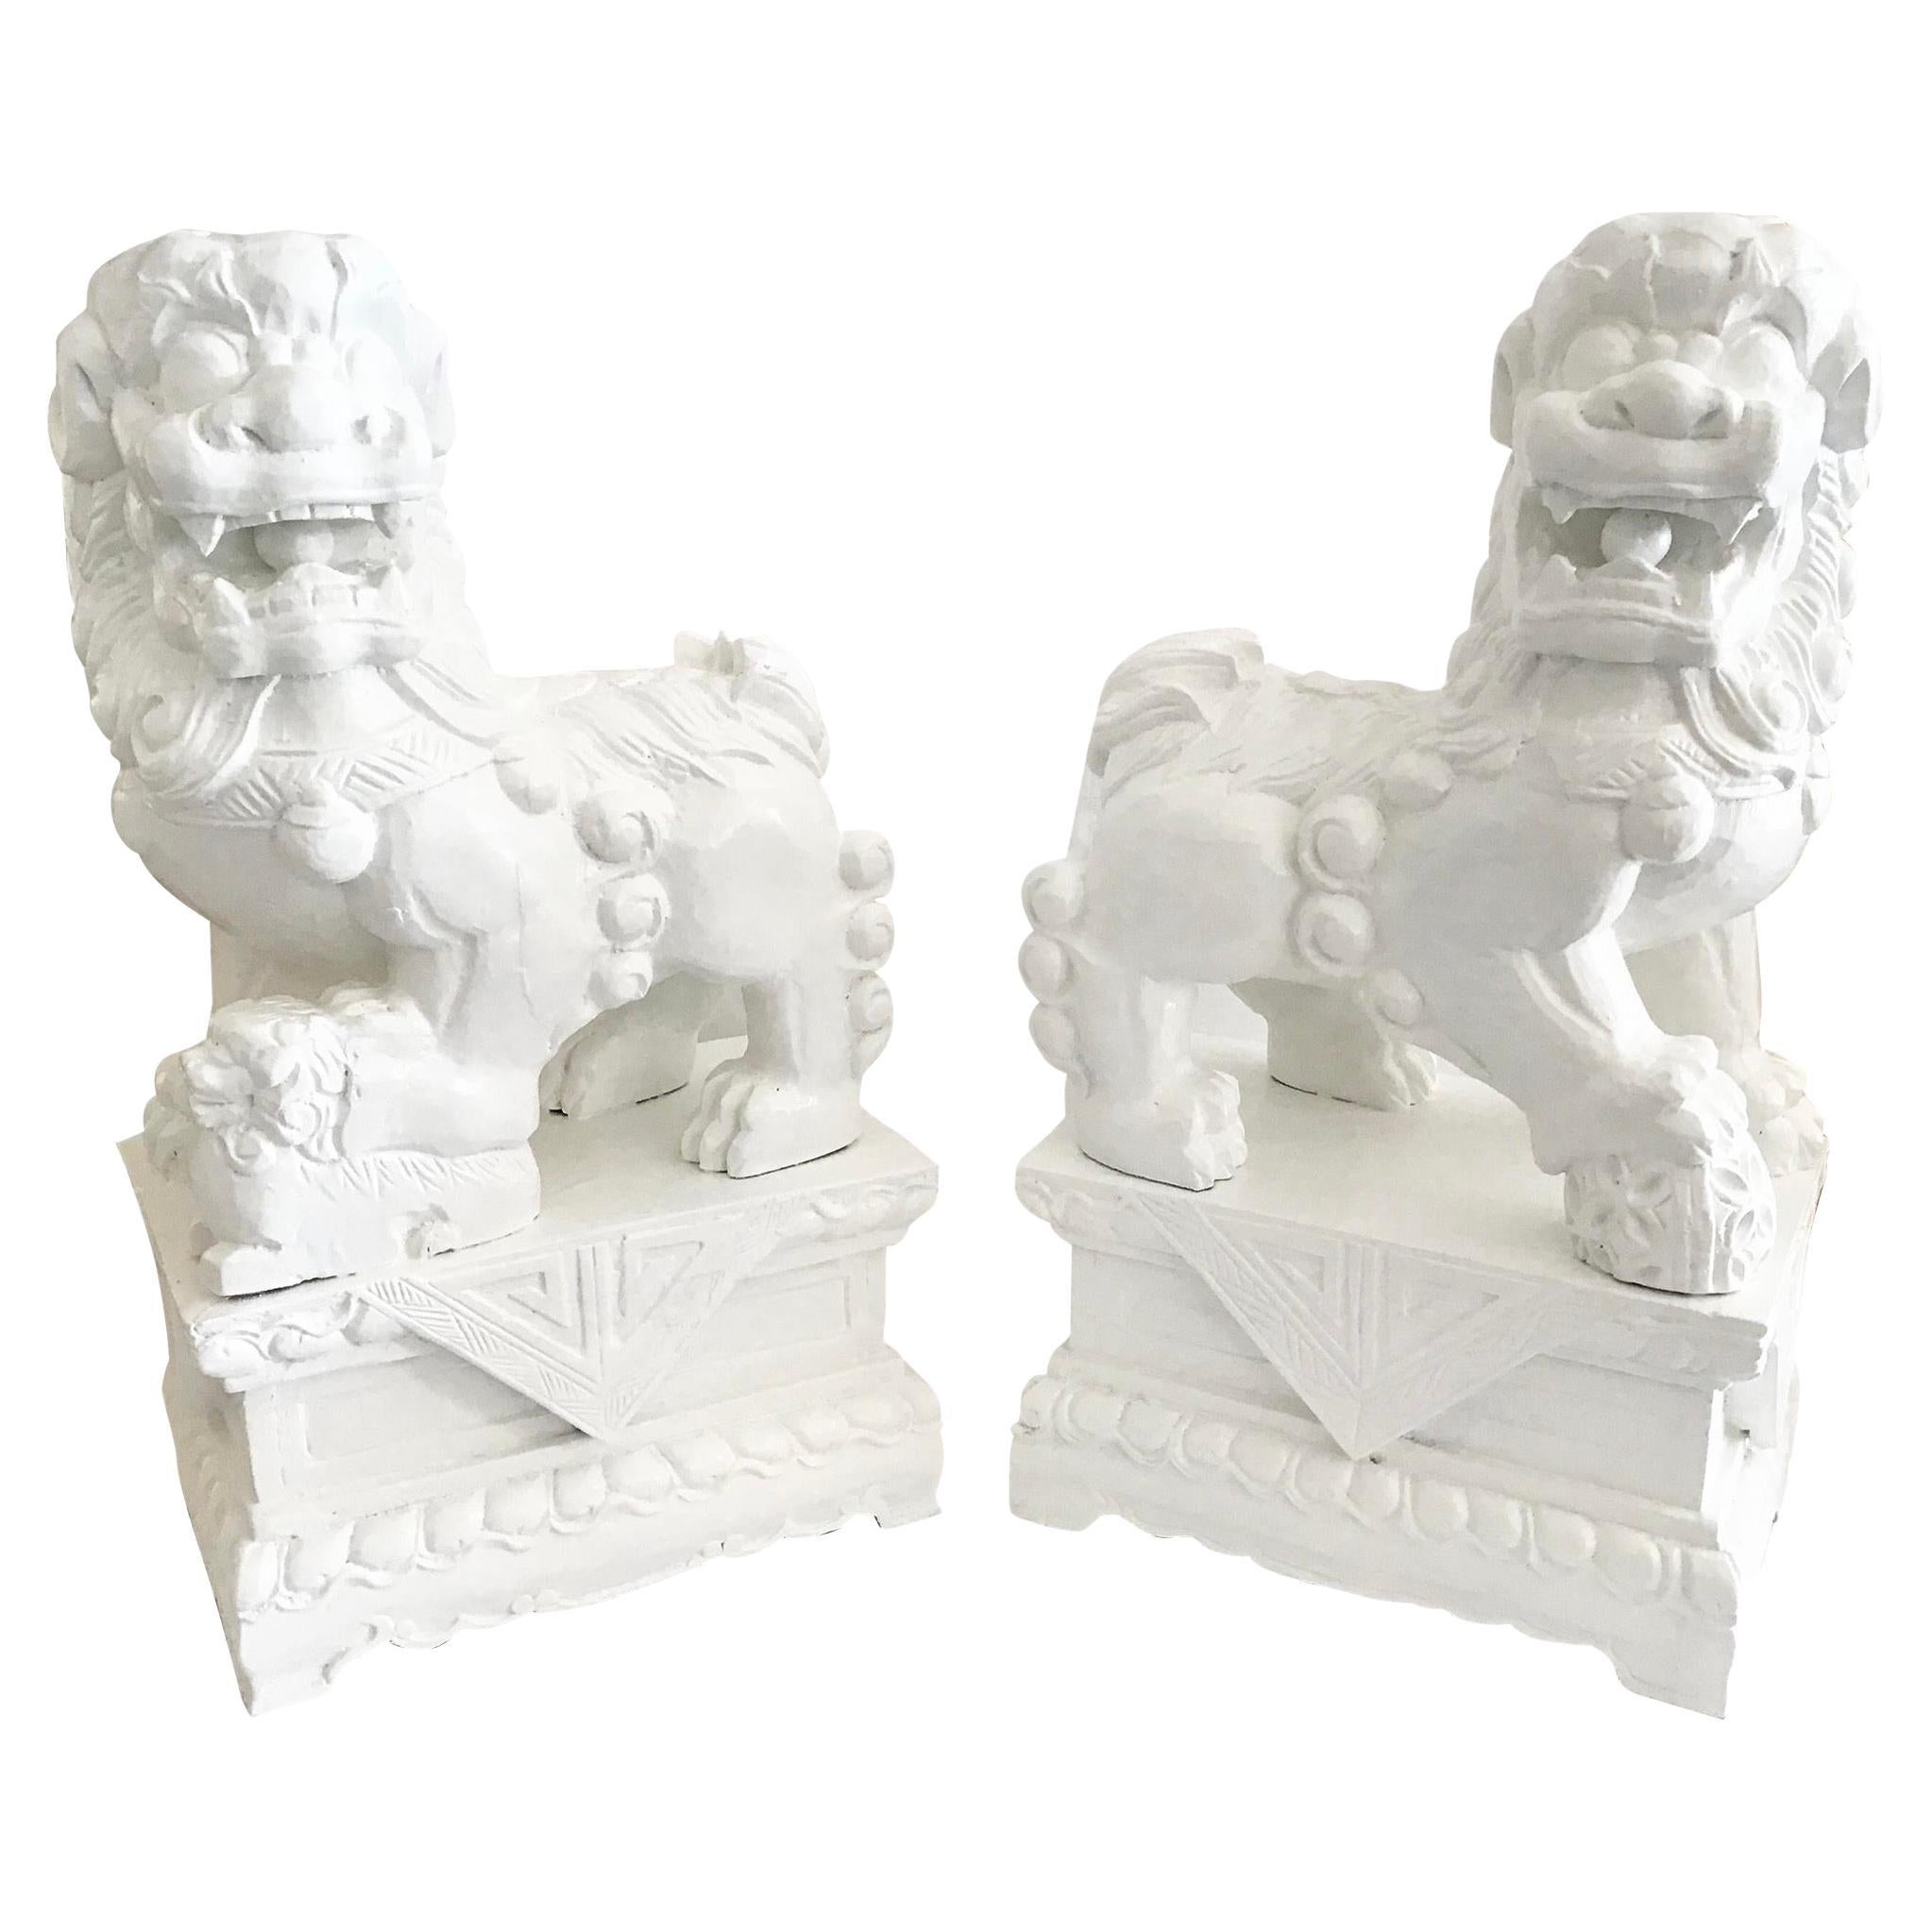 Paire de figurines géométriques de chiens Foo blancs sculptés dans une base en bois